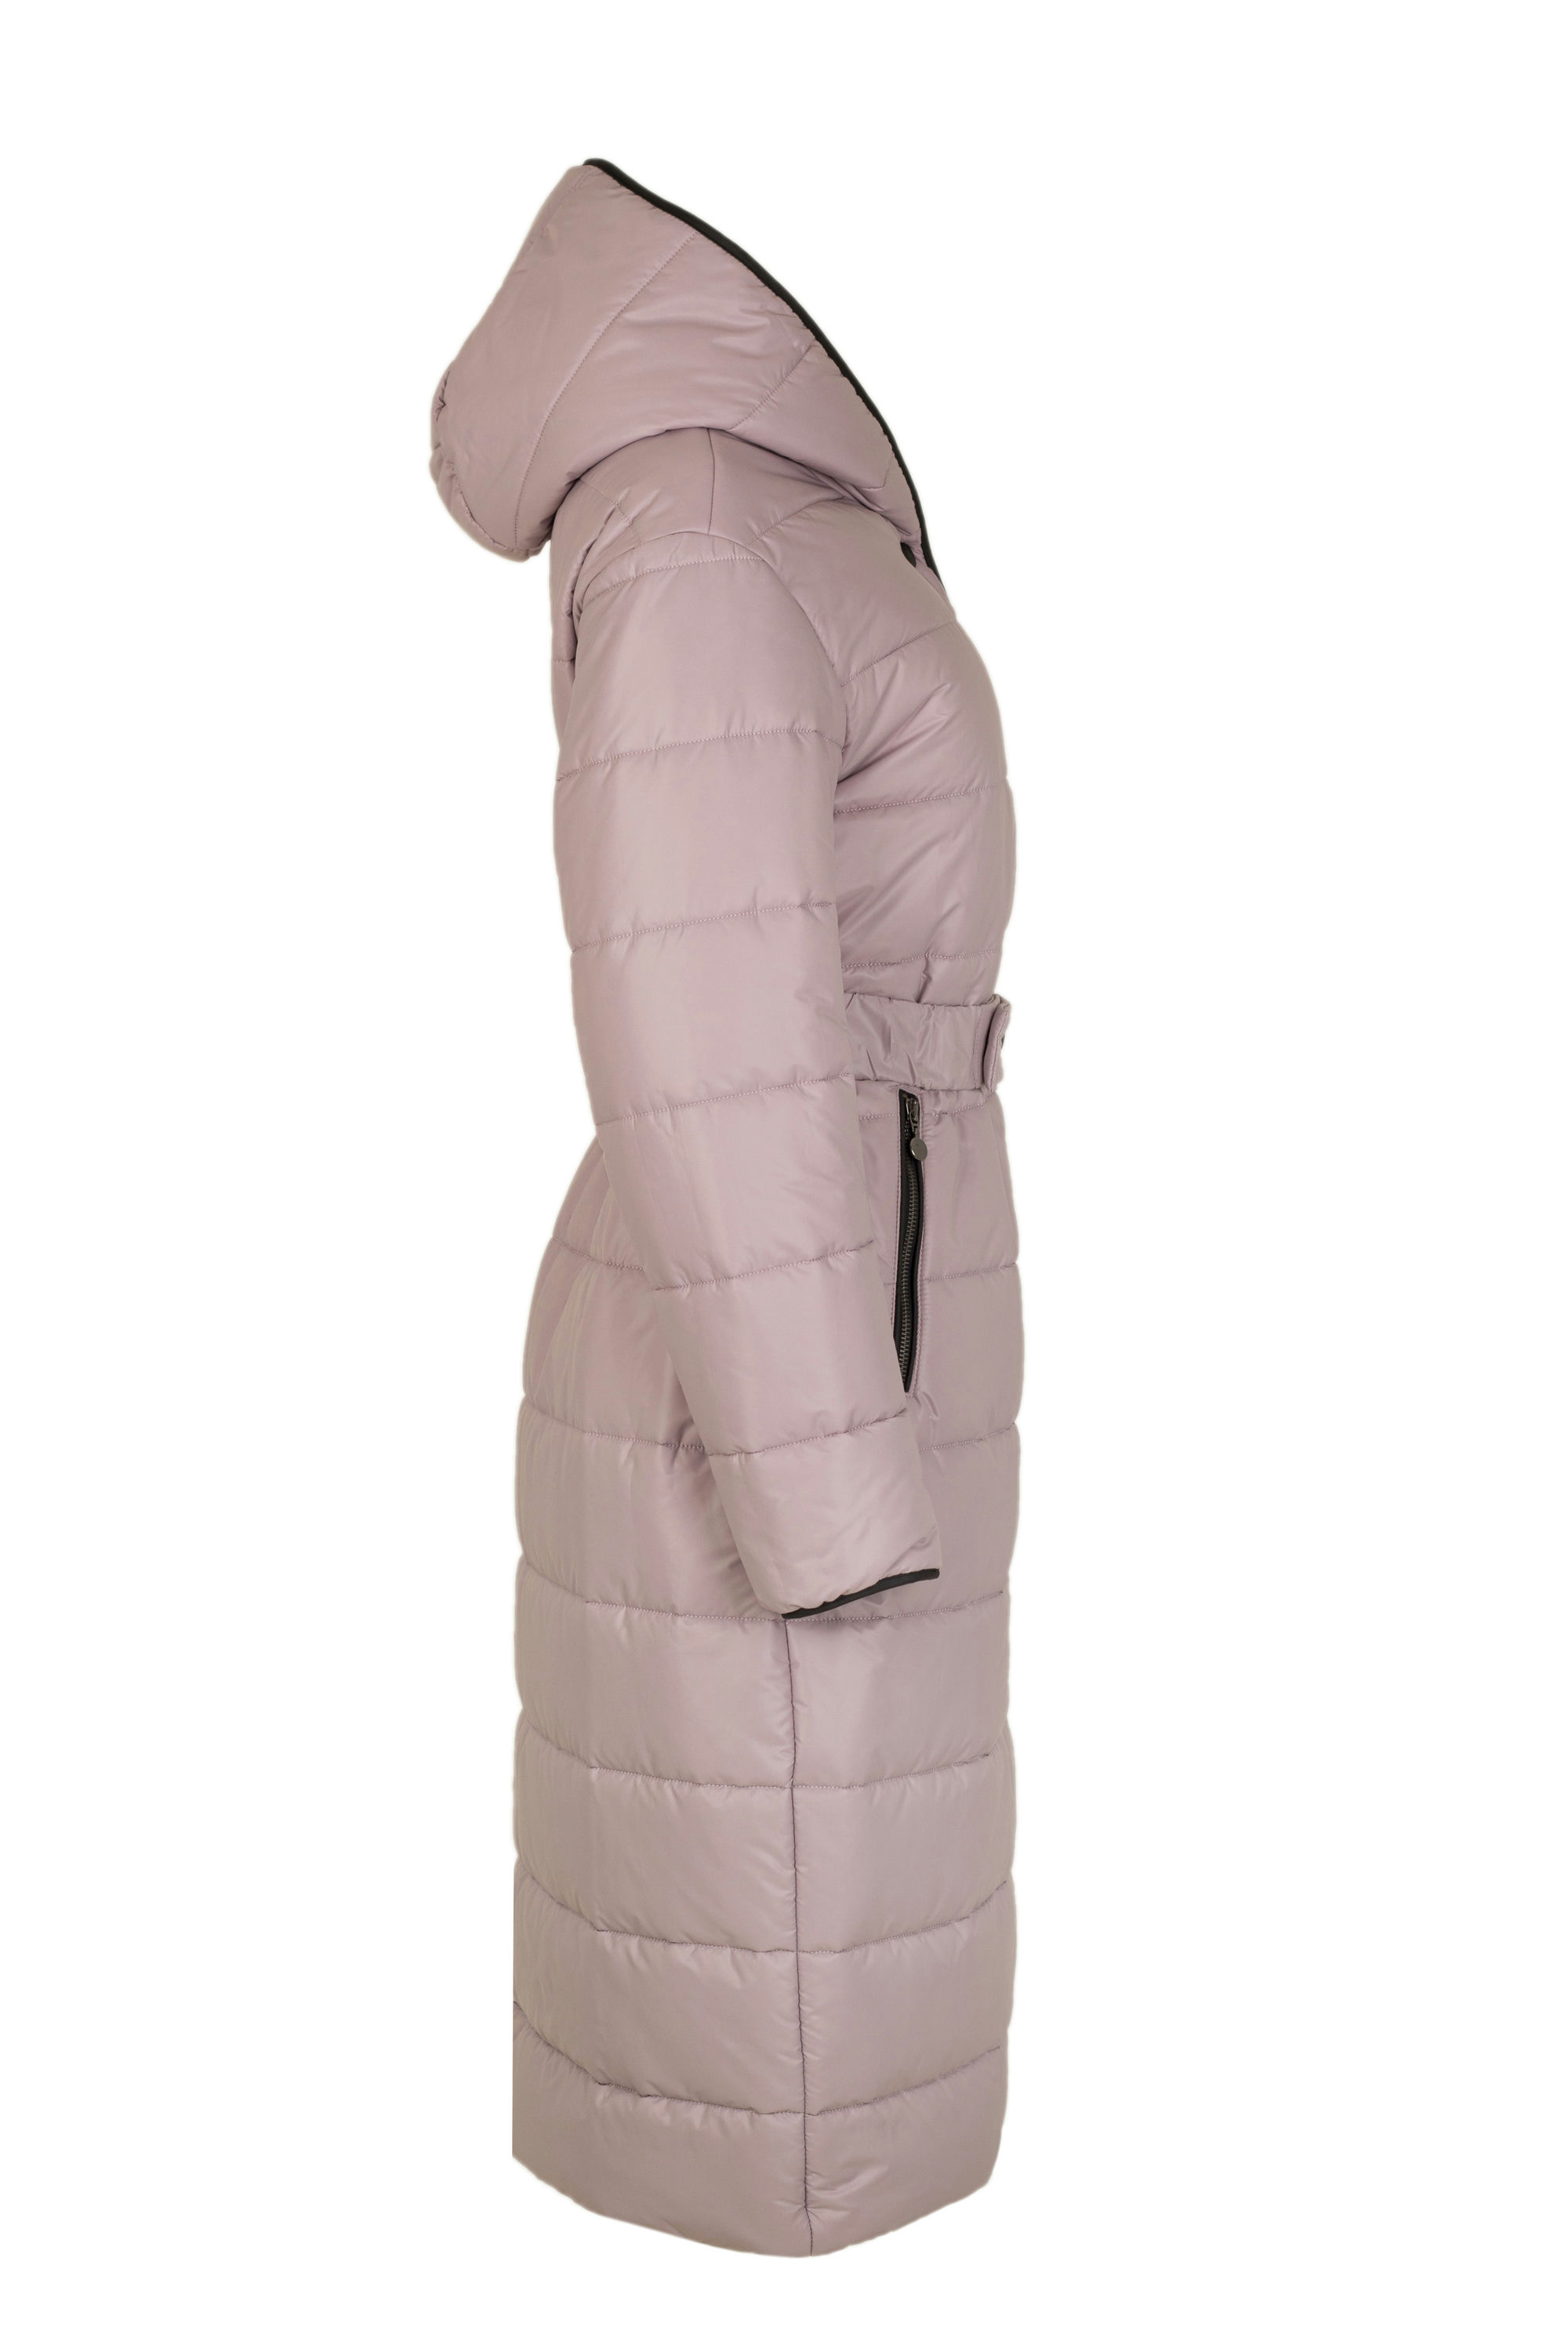 Пальто женское плащевое утепленное 5-12410-1. Фото 6.